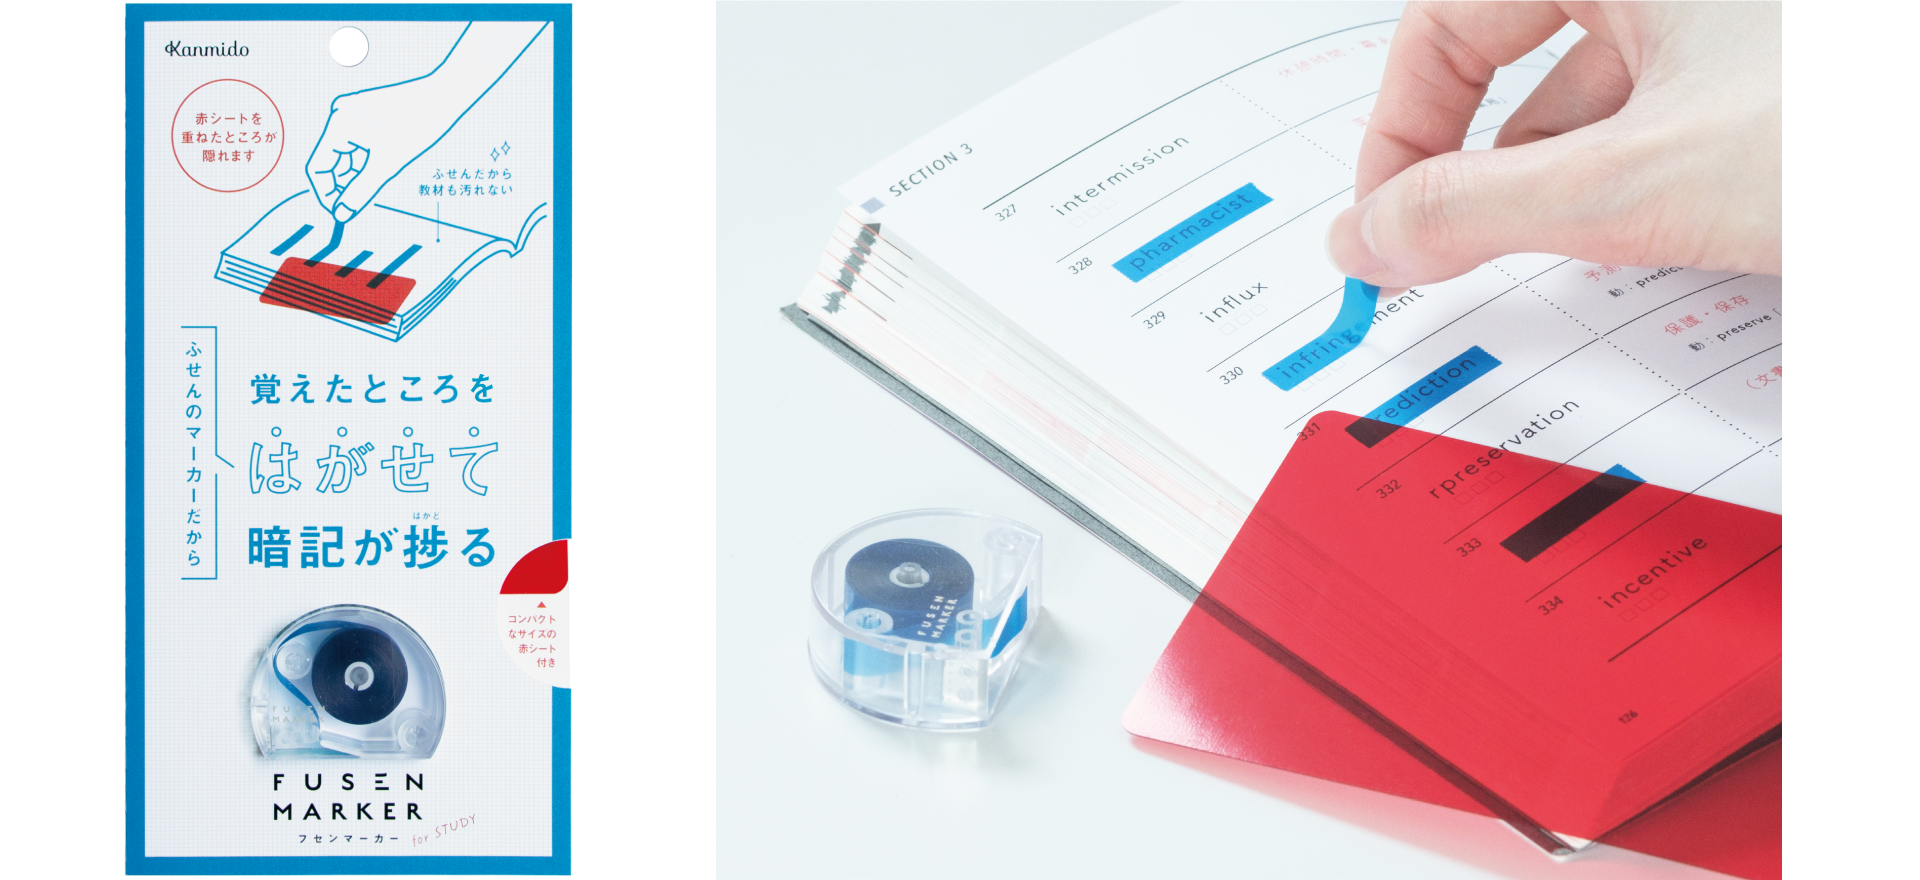 フセンマーカー Study 暗記学習用カラー 赤シートセットタイプを新発売 カンミ堂